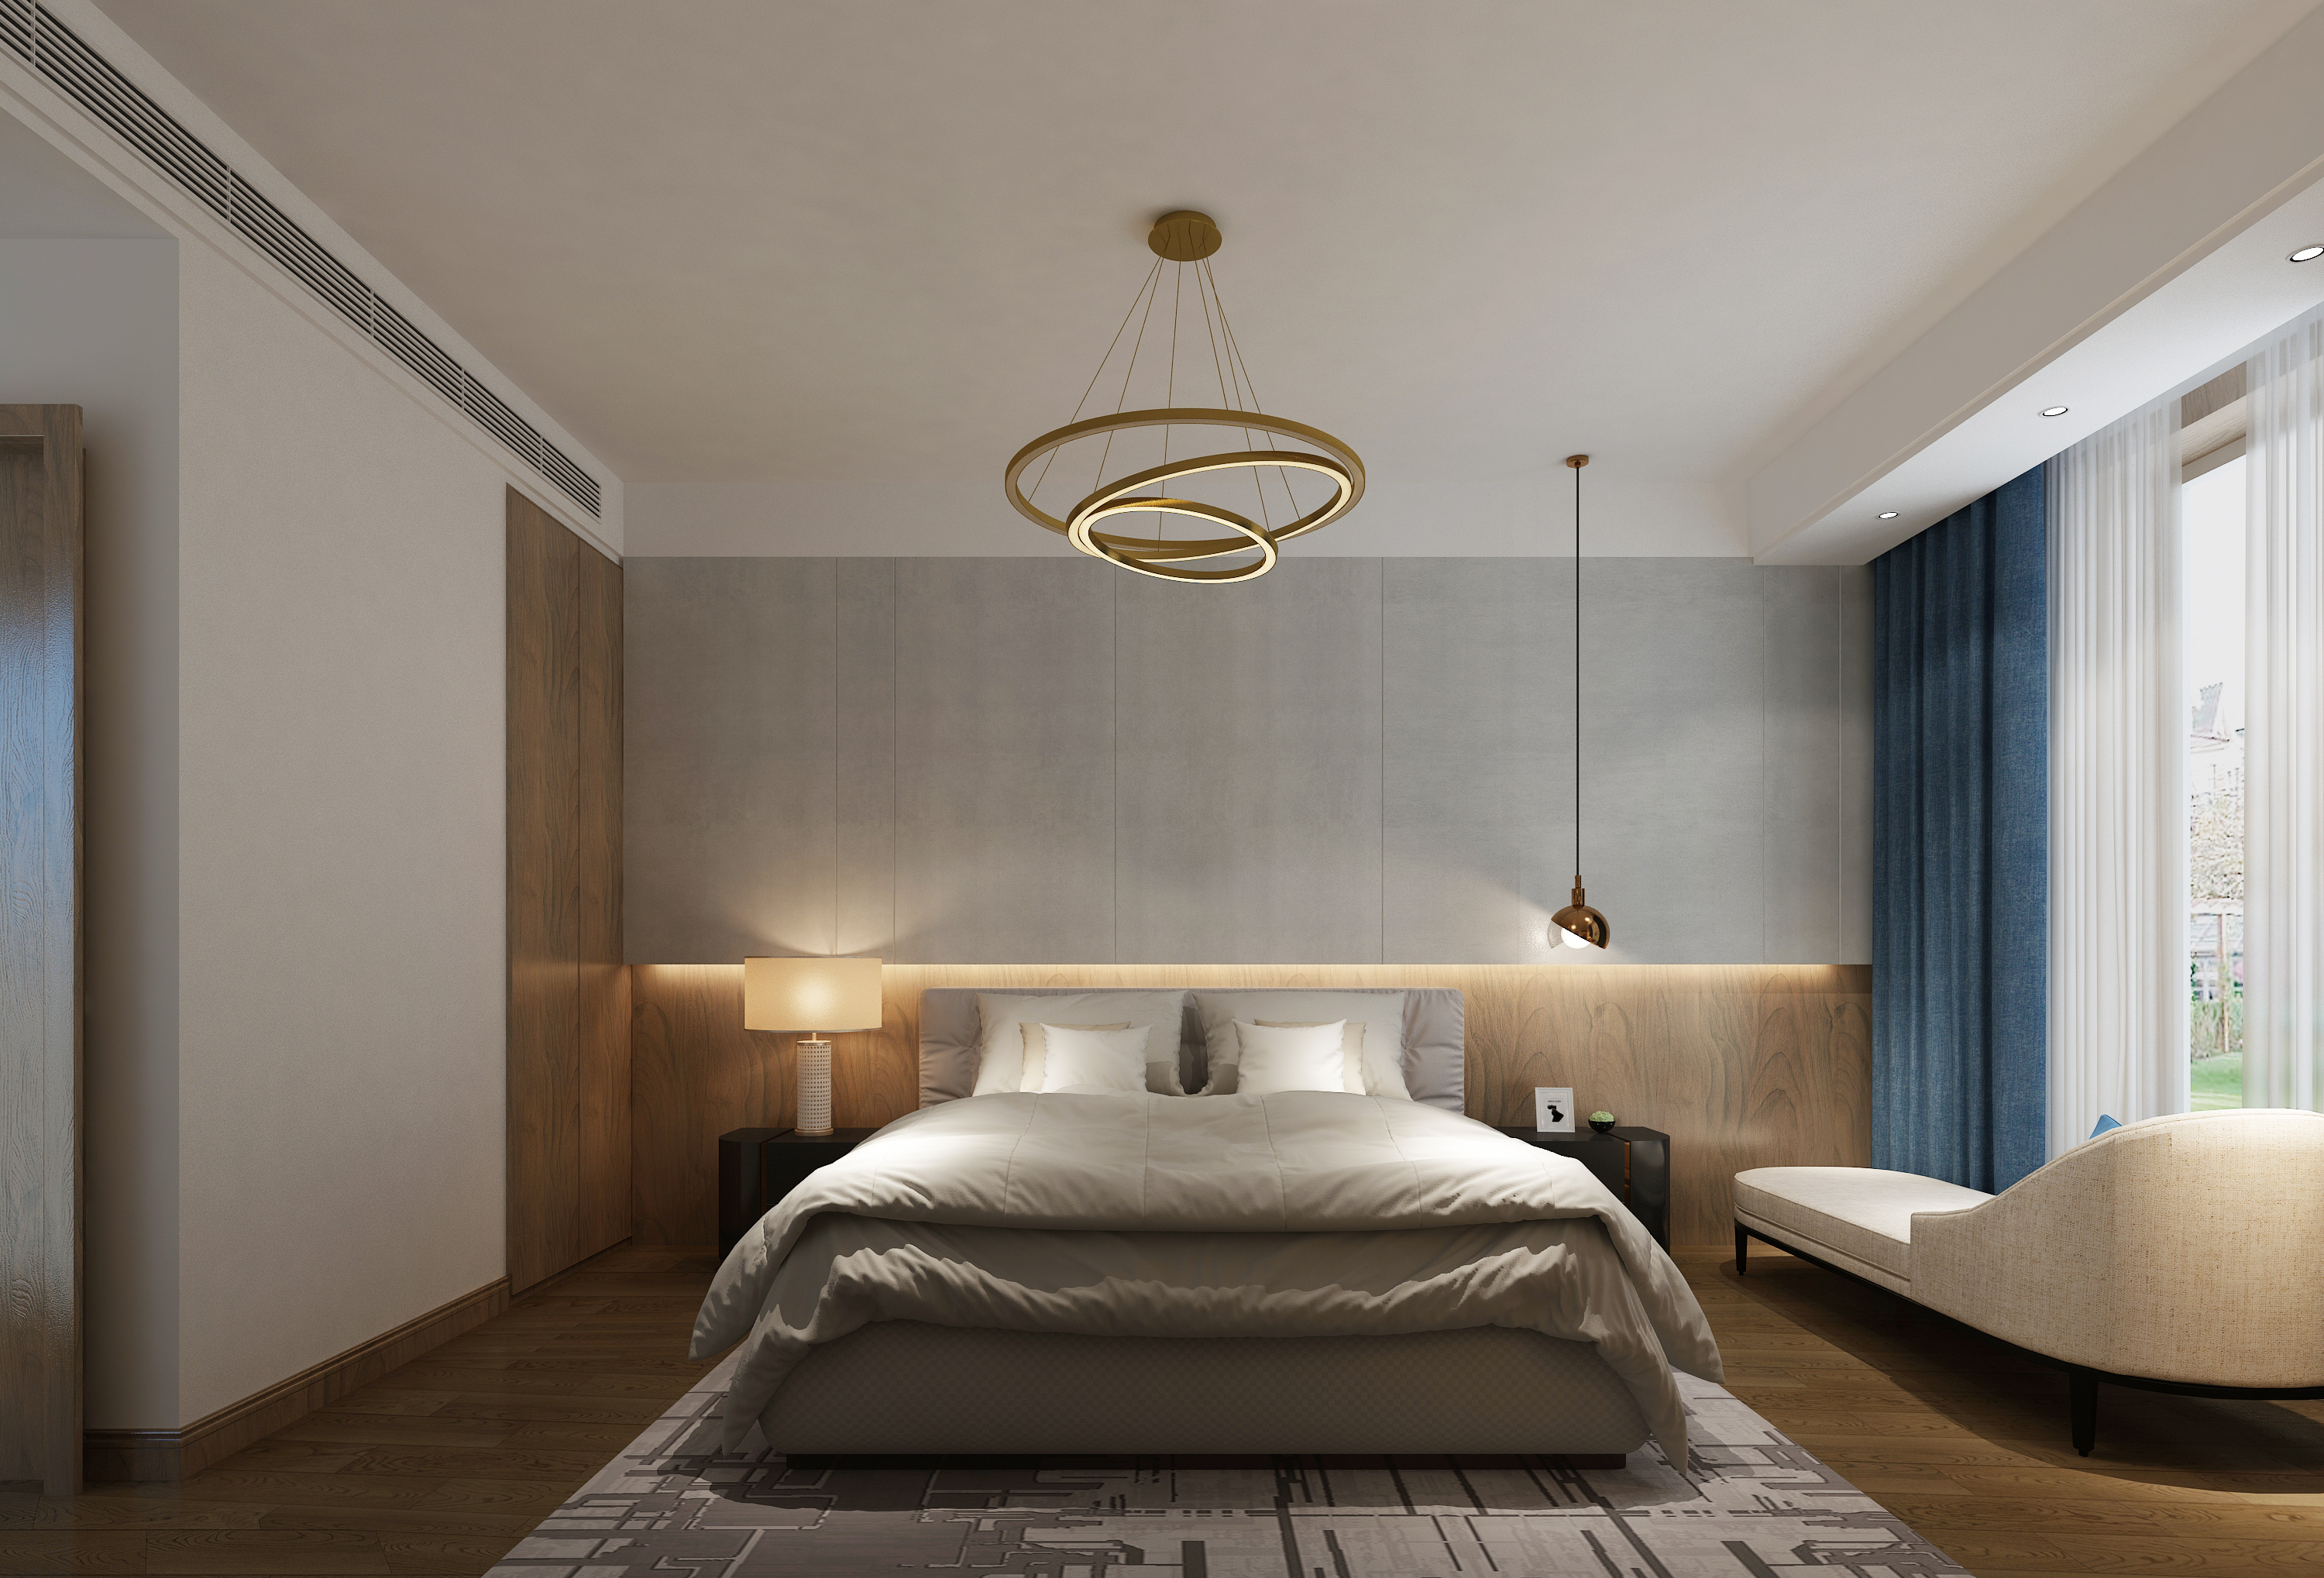 主卧床头背景墙考虑嵌入式灯带,明亮又比较温馨.